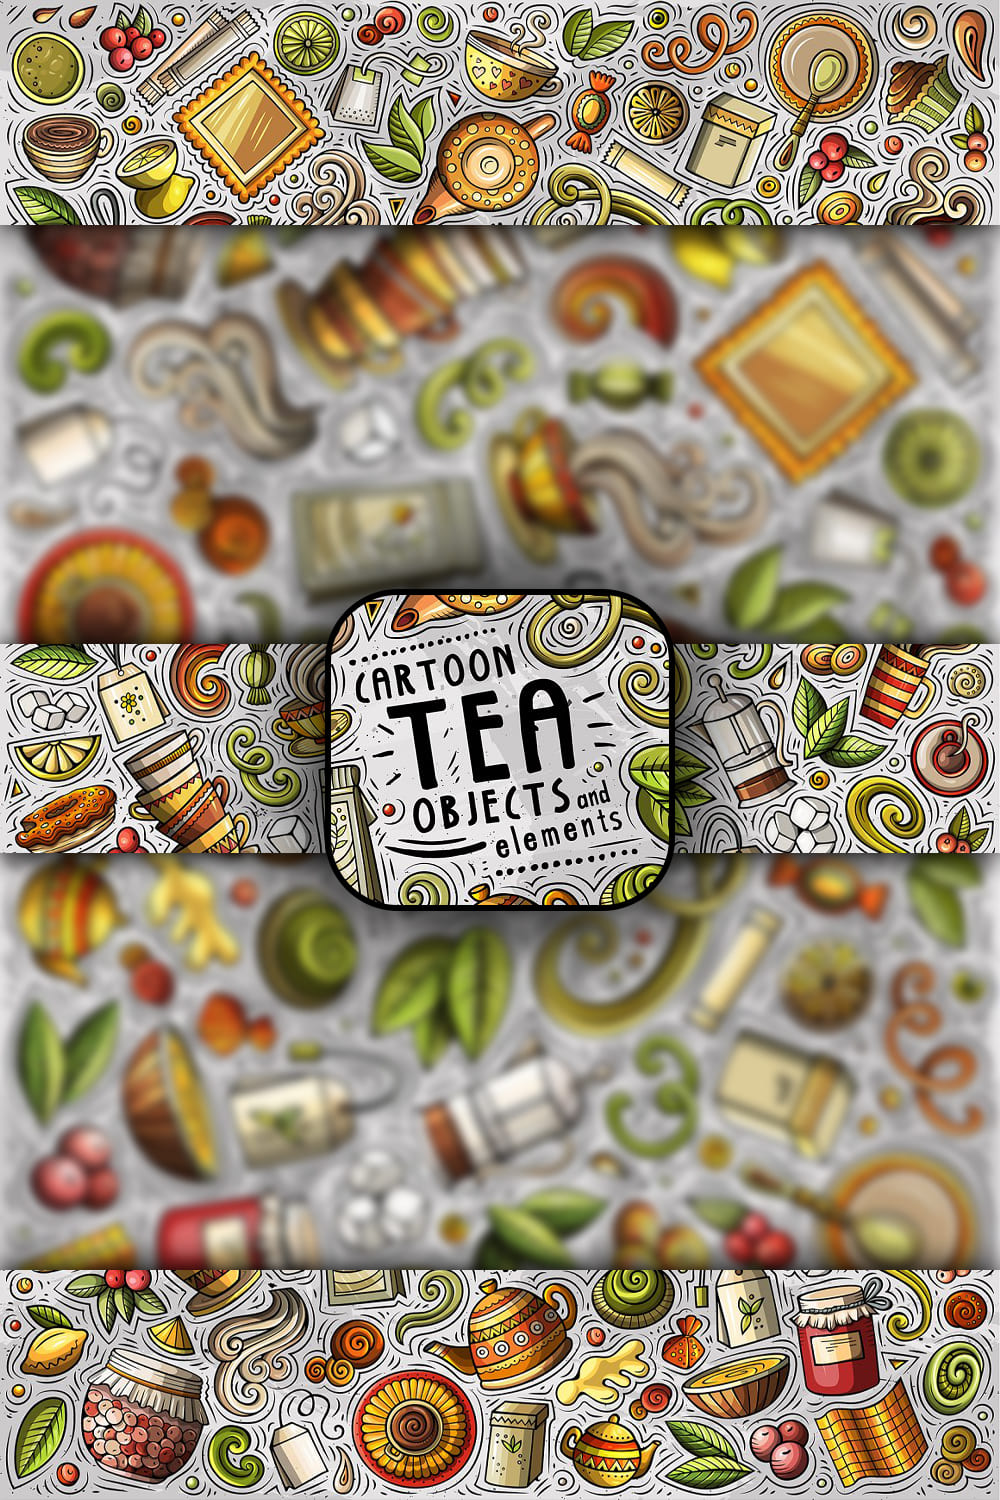 Tea Cartoon Vector Objects Set Pinterest 1000 1500.